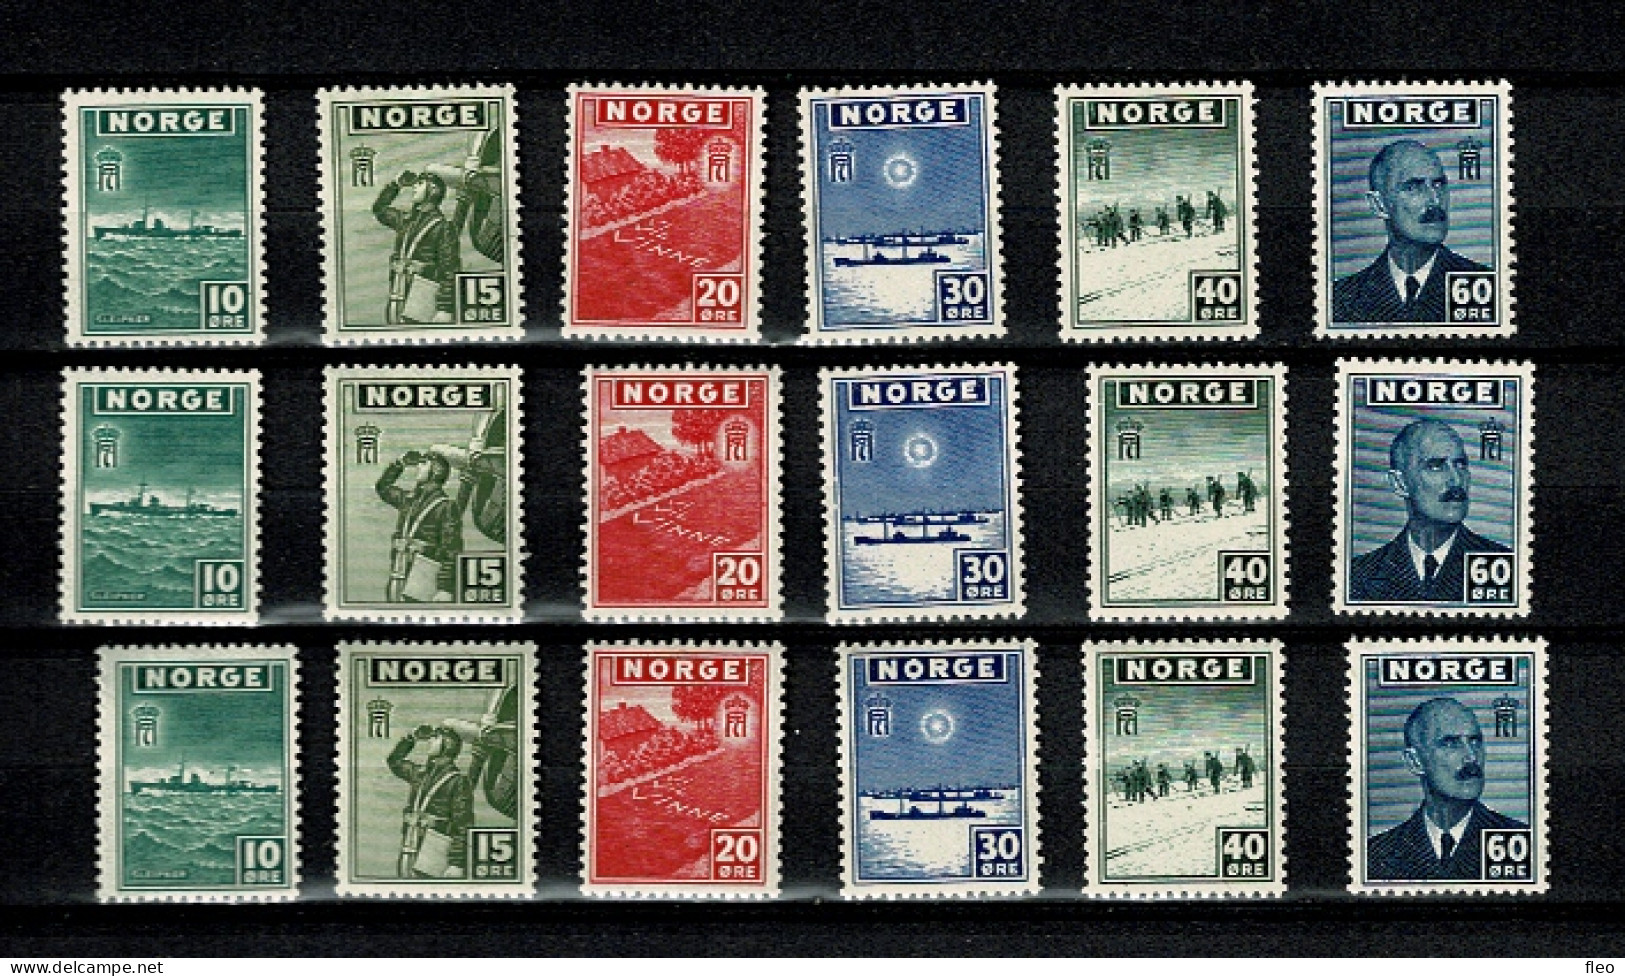 1943 NORVEGE  3 X Serie N° 263 à 268 ** Gouvernement En Exil - 1943-45 - Nuevos